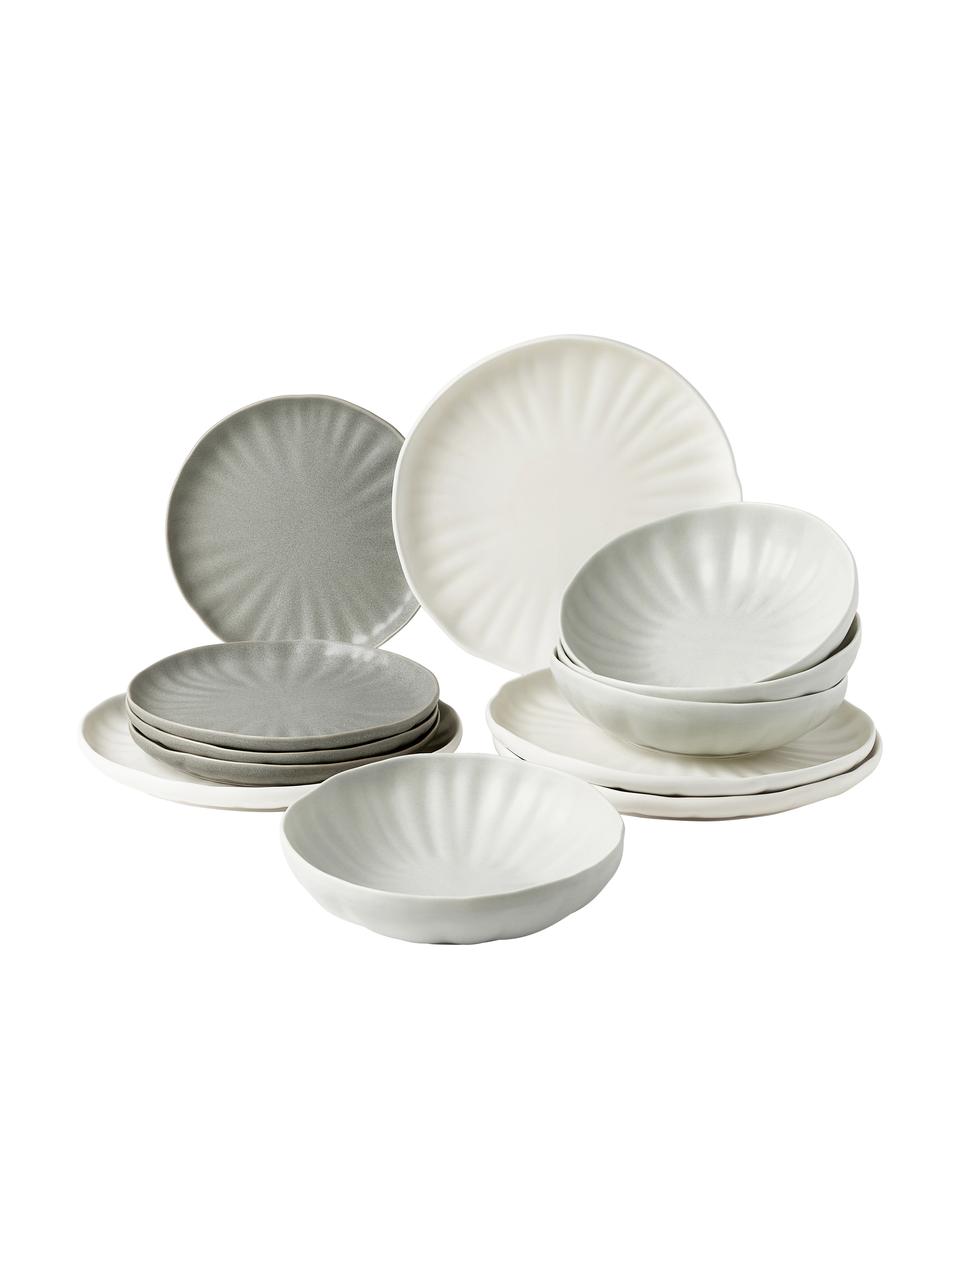 Sada porcelánového nádobí s reliéfem, pro 4 osoby (12 dílů), Porcelán, Krémově bílá, odstíny šedé, Pro 4 osoby (12 dílů)